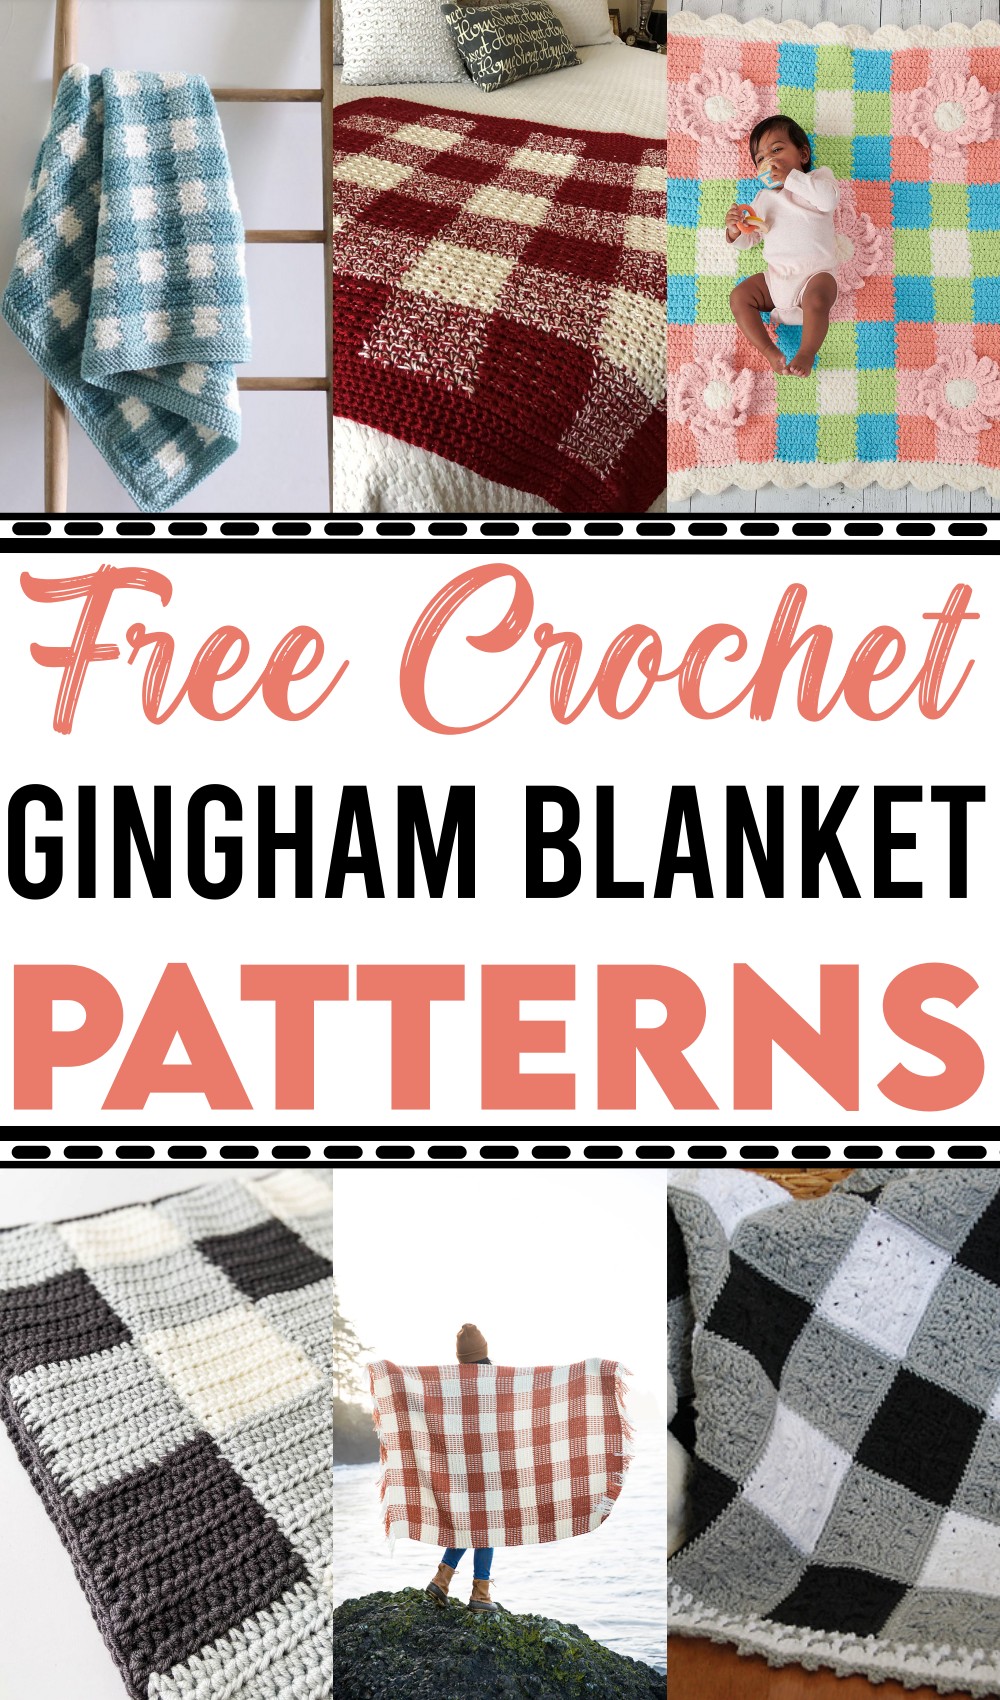 Crochet Gingham Blanket Patterns 1